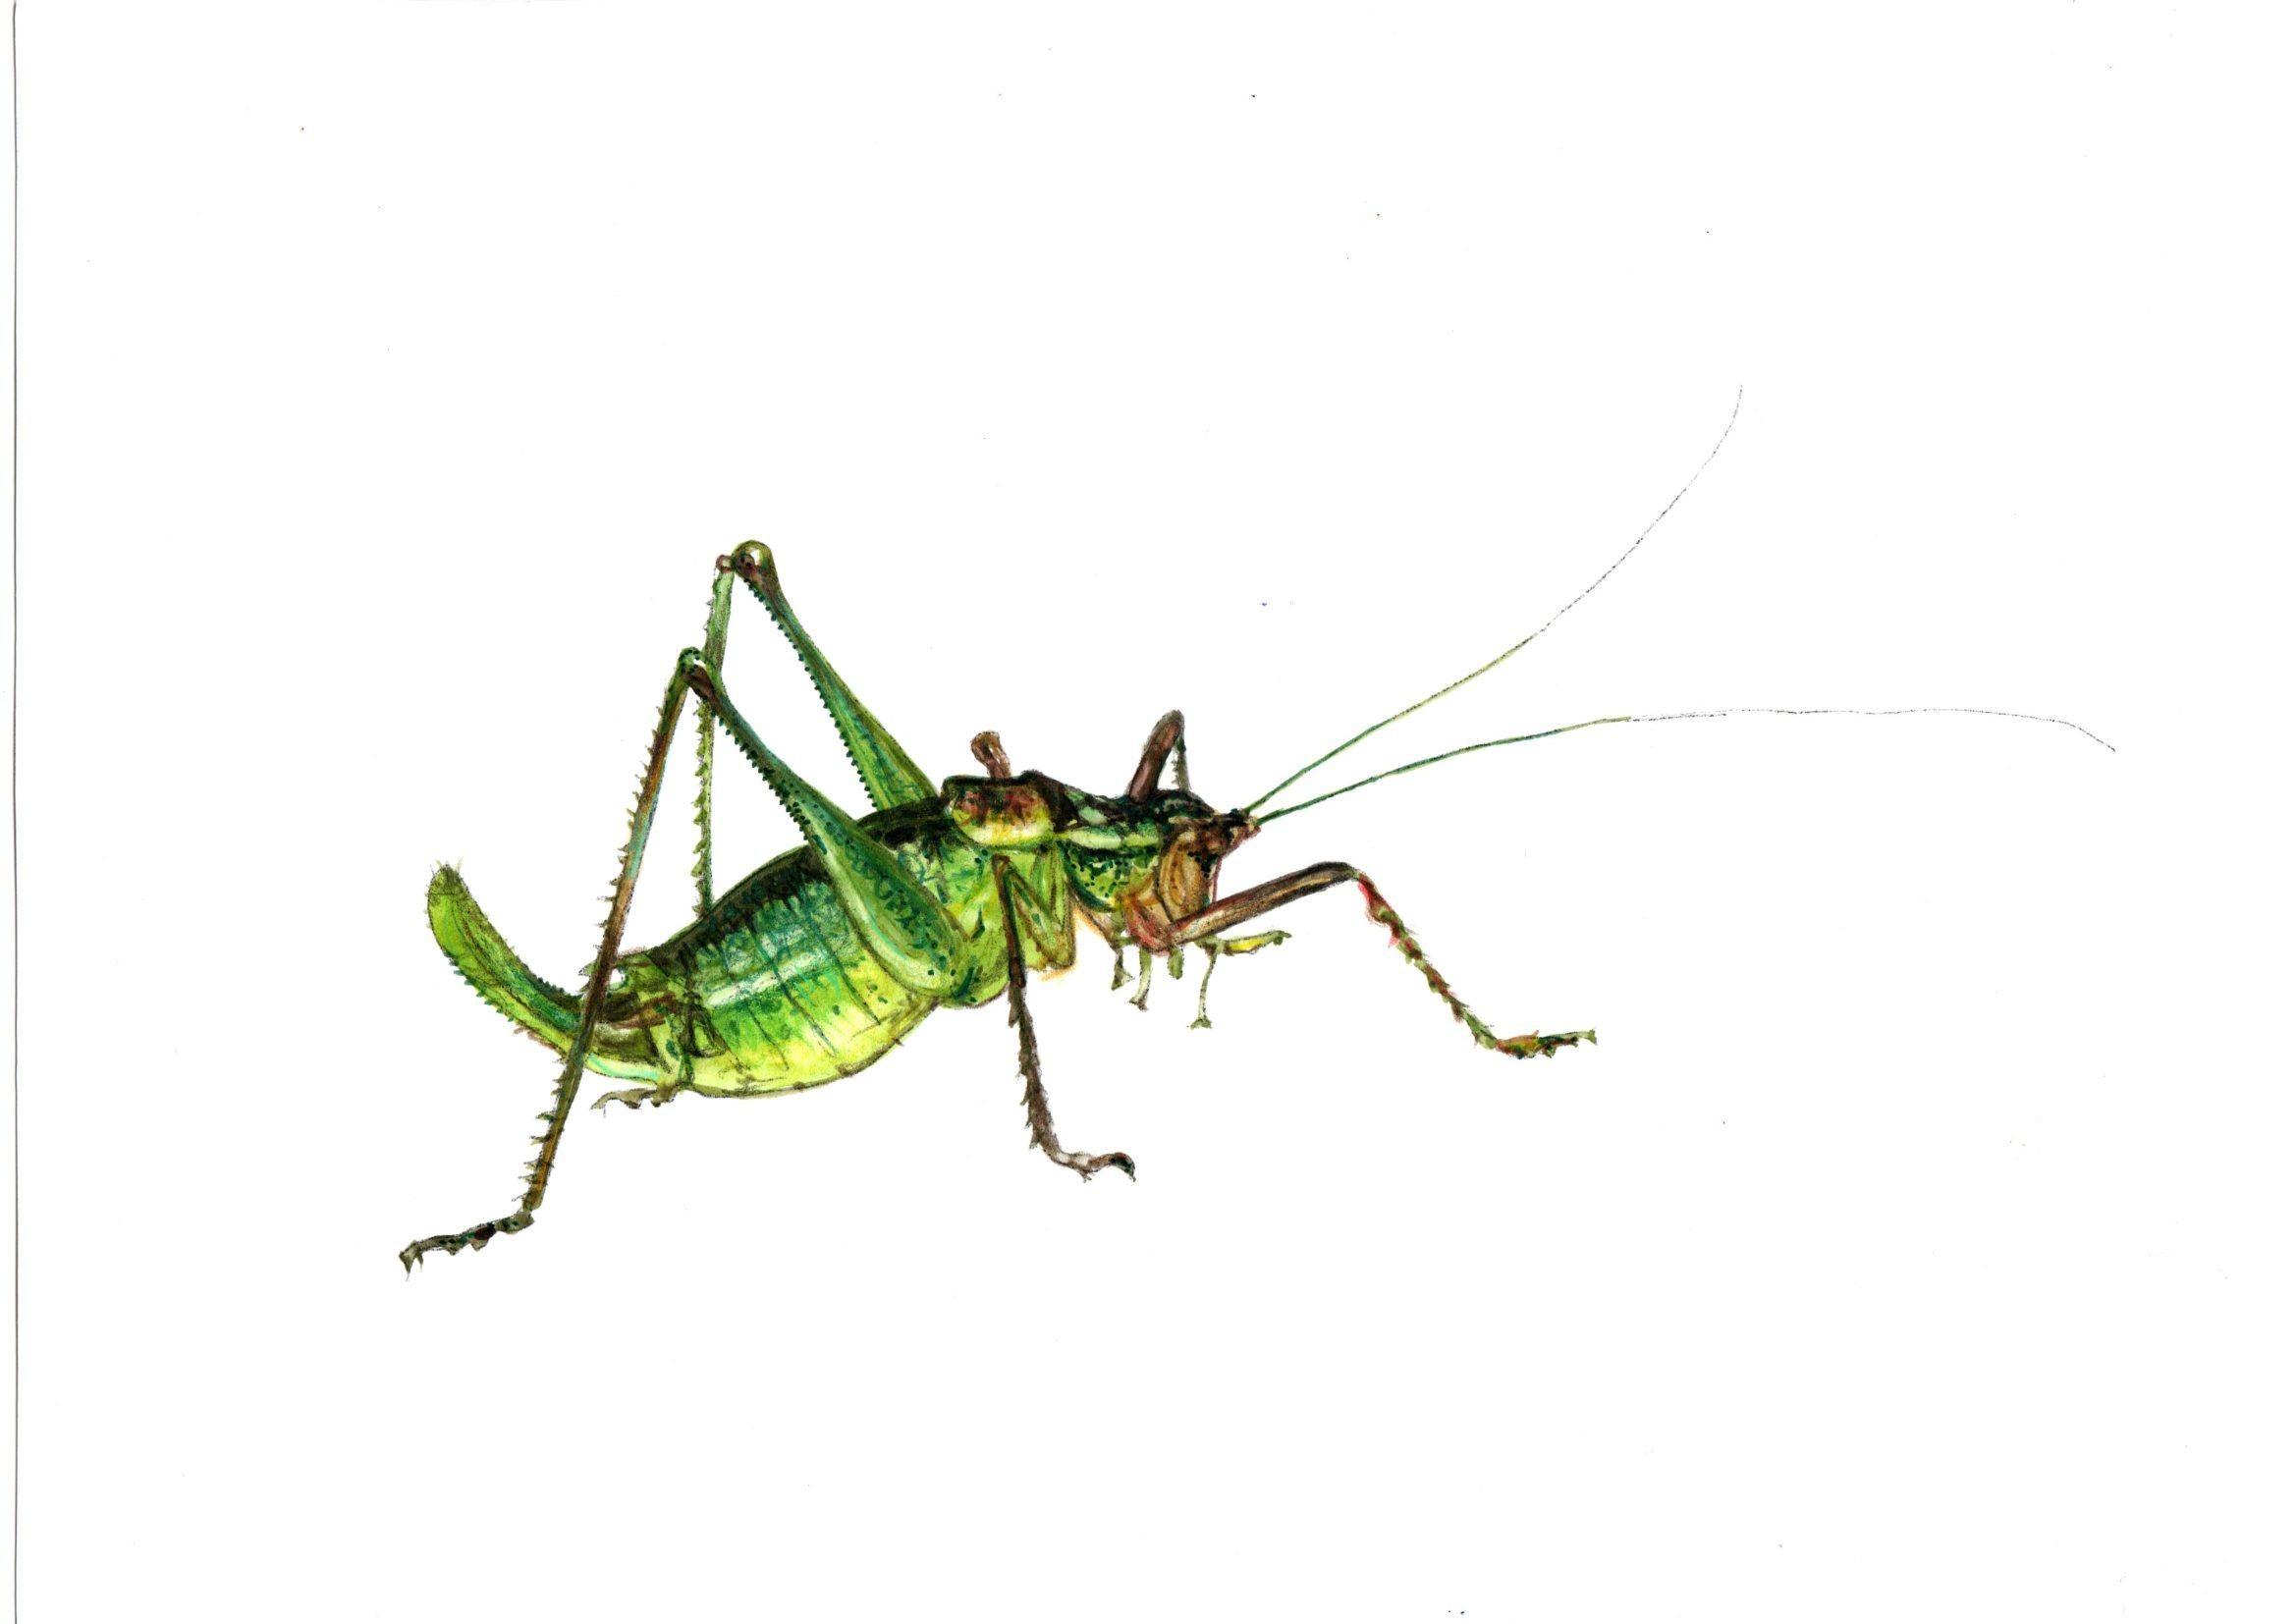 Grasshopper. Paper, mixed media, 21x30 cm